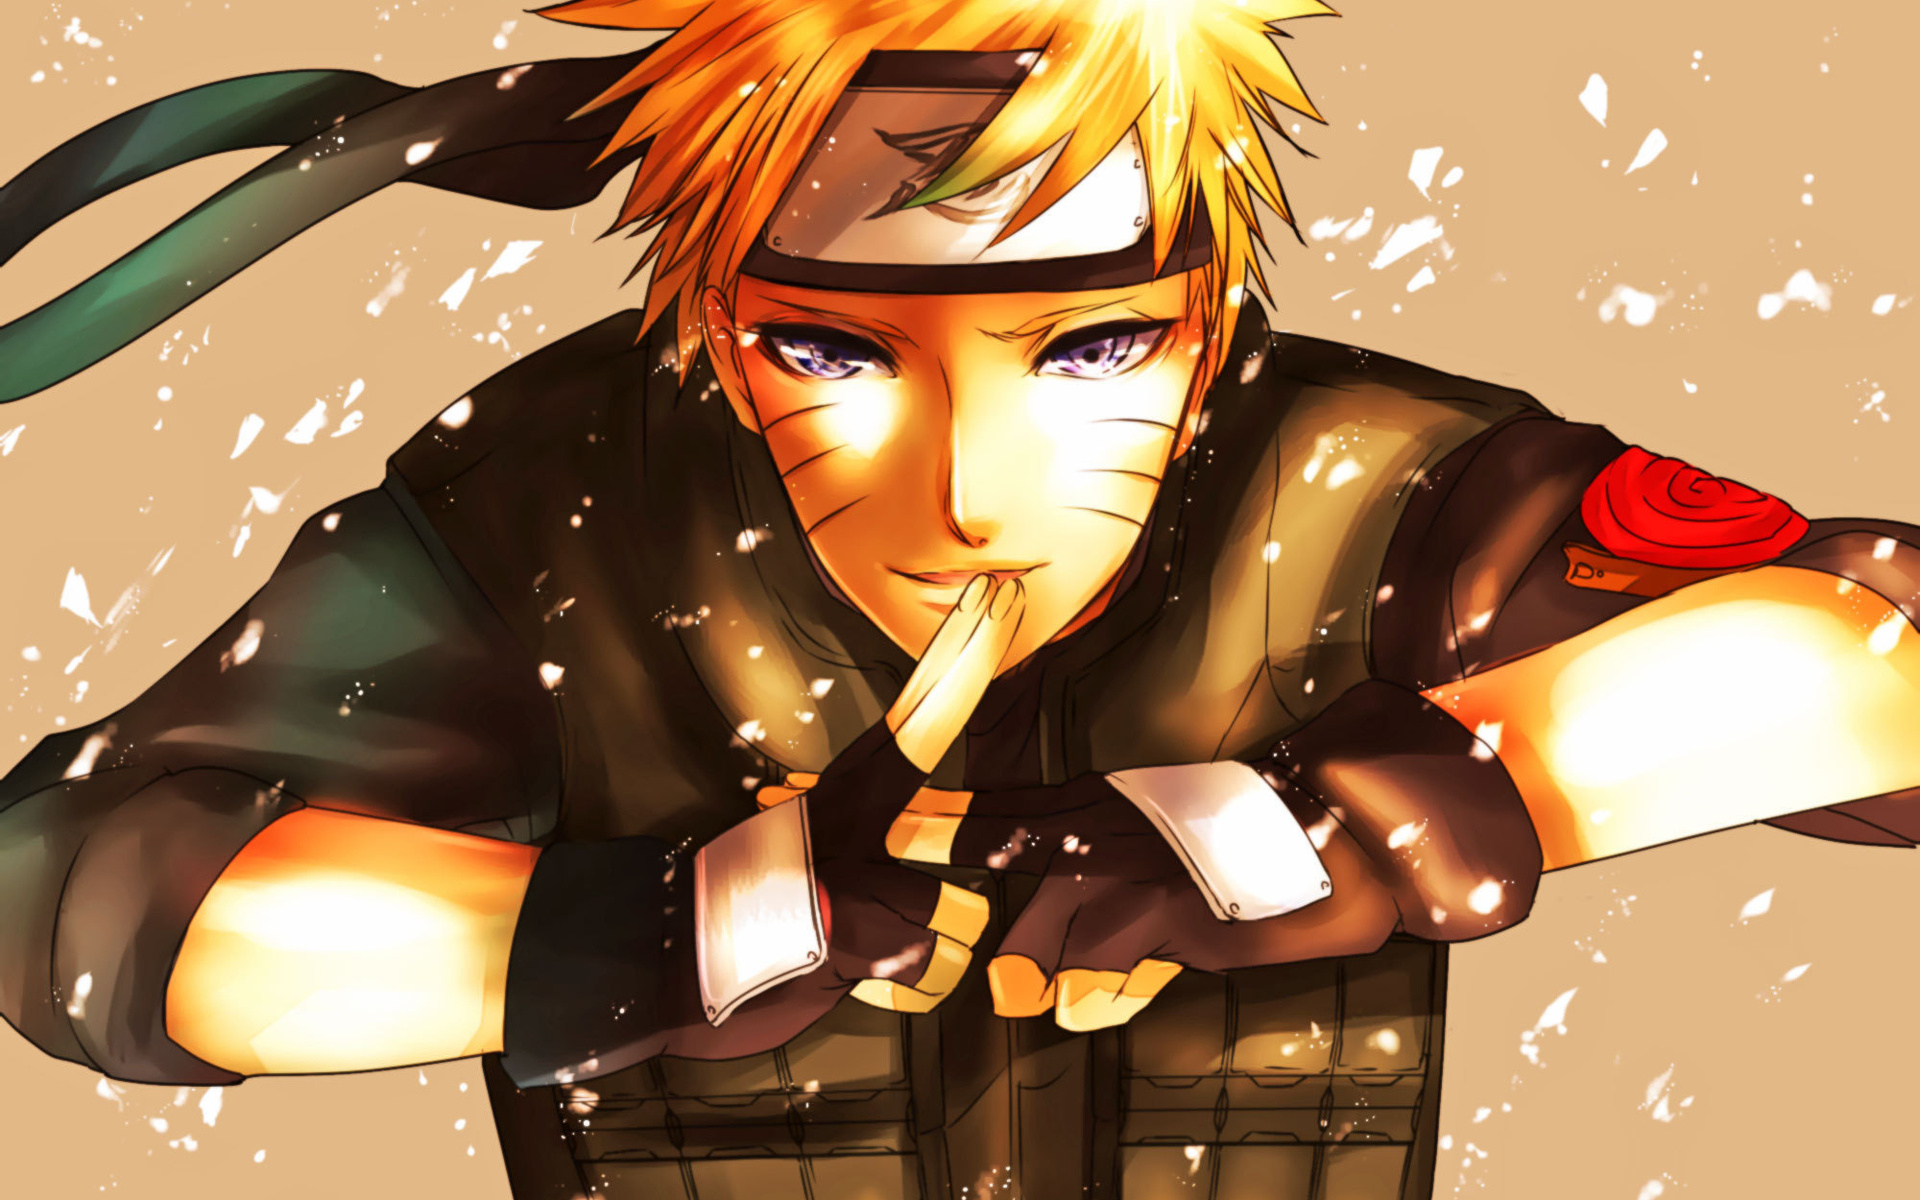 Hình nền đáng yêu Naruto sẽ khiến bạn đắm chìm trong thế giới huyền thoại của Naruto. Hãy xem hình để ngắm nhìn Naruto với nụ cười ngọt ngào và tạo cho màn hình điện thoại của bạn một vẻ đẹp mới lạ.